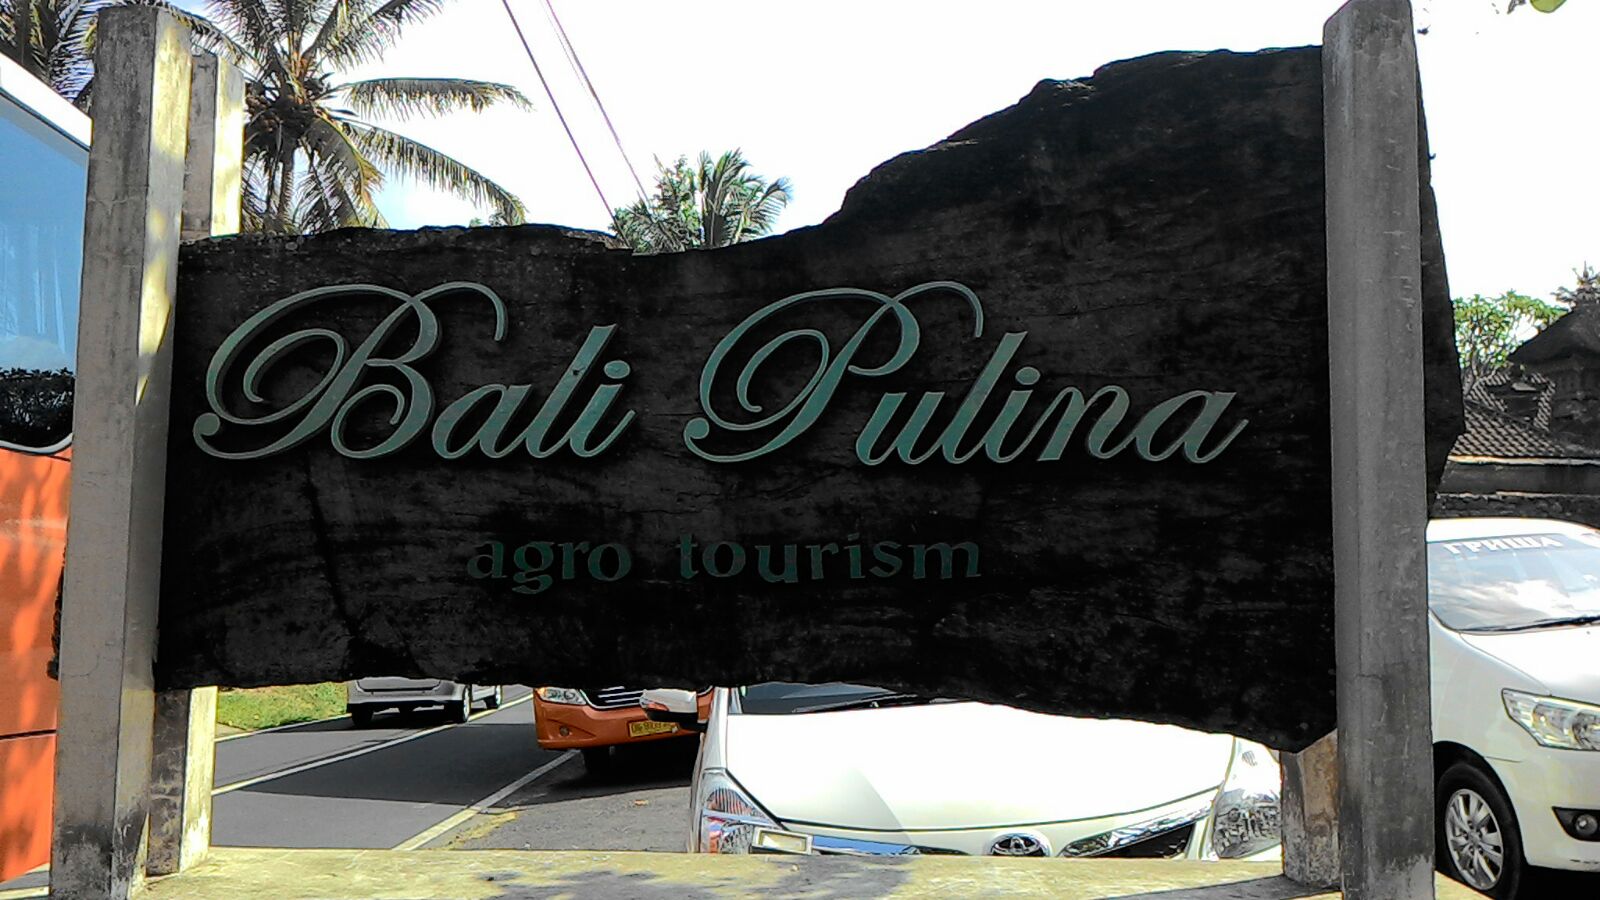 Jelajah Gizi Bali Menggali Potensi Gizi Di Bali Pulina Desa